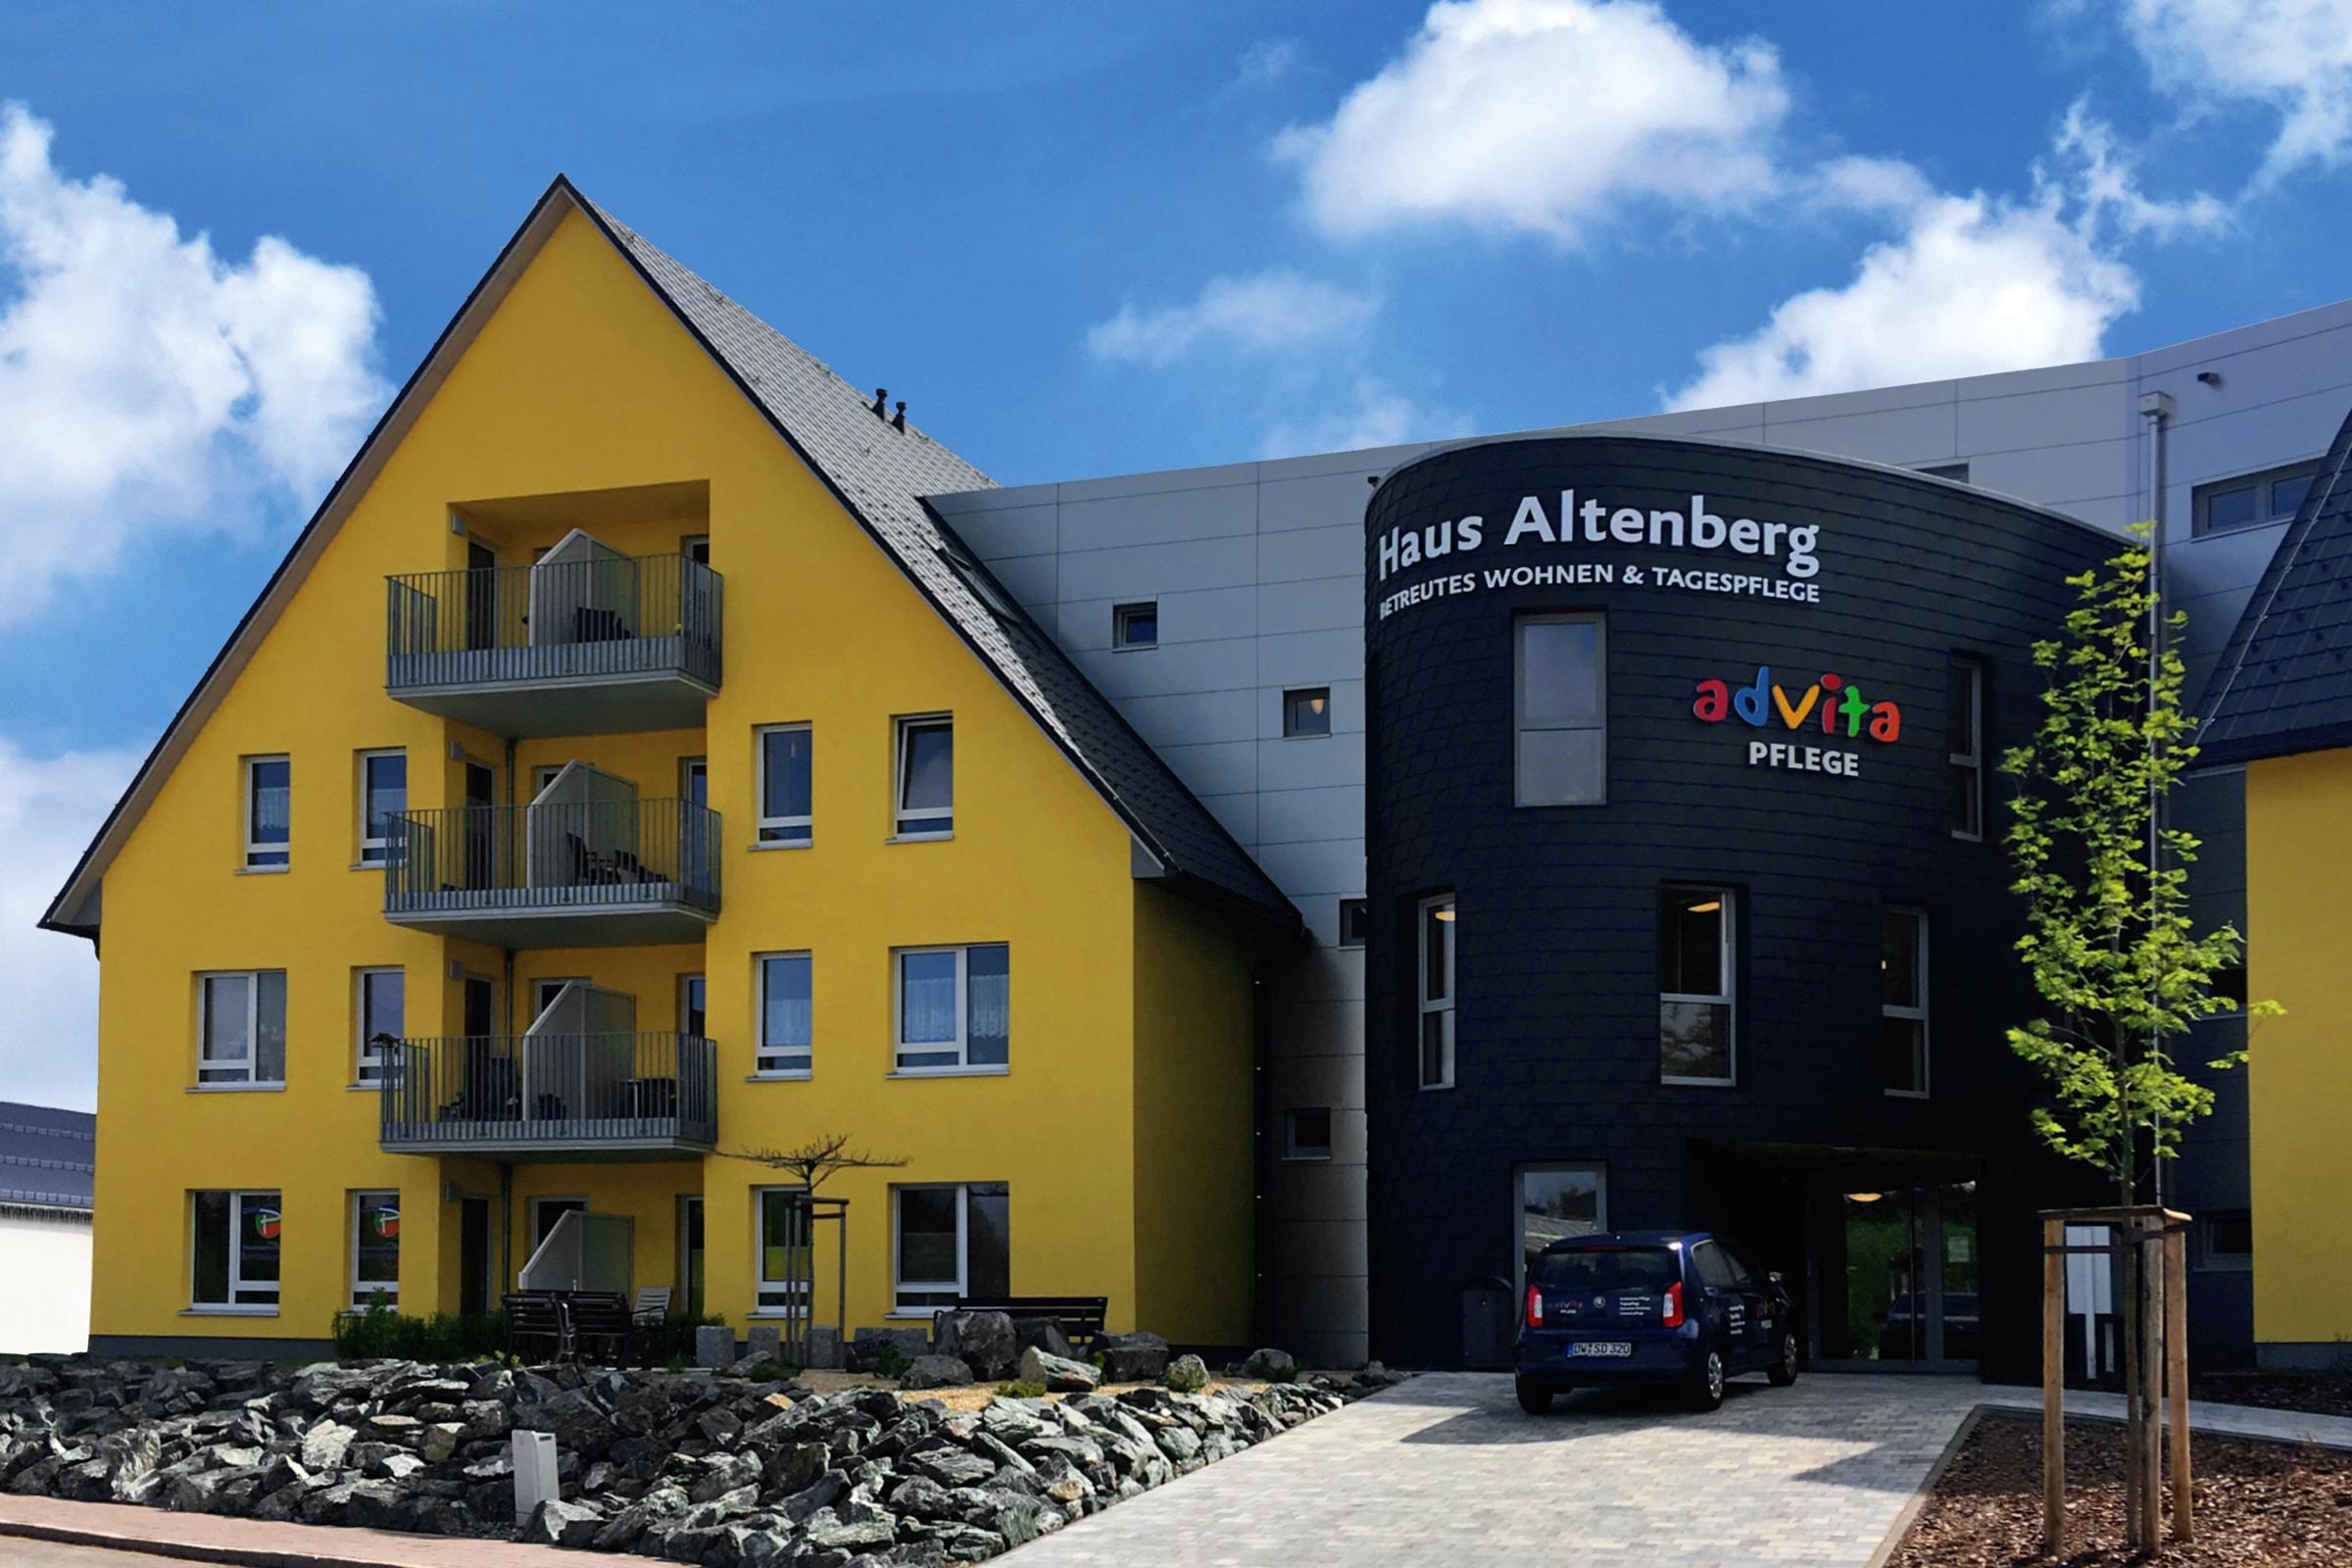 advita Haus »Glück auf« | Pflegedienst in Altenberg | Betreutes Wohnen | Pflege-WG | Tagespflege | Ambulante Tourenpflege